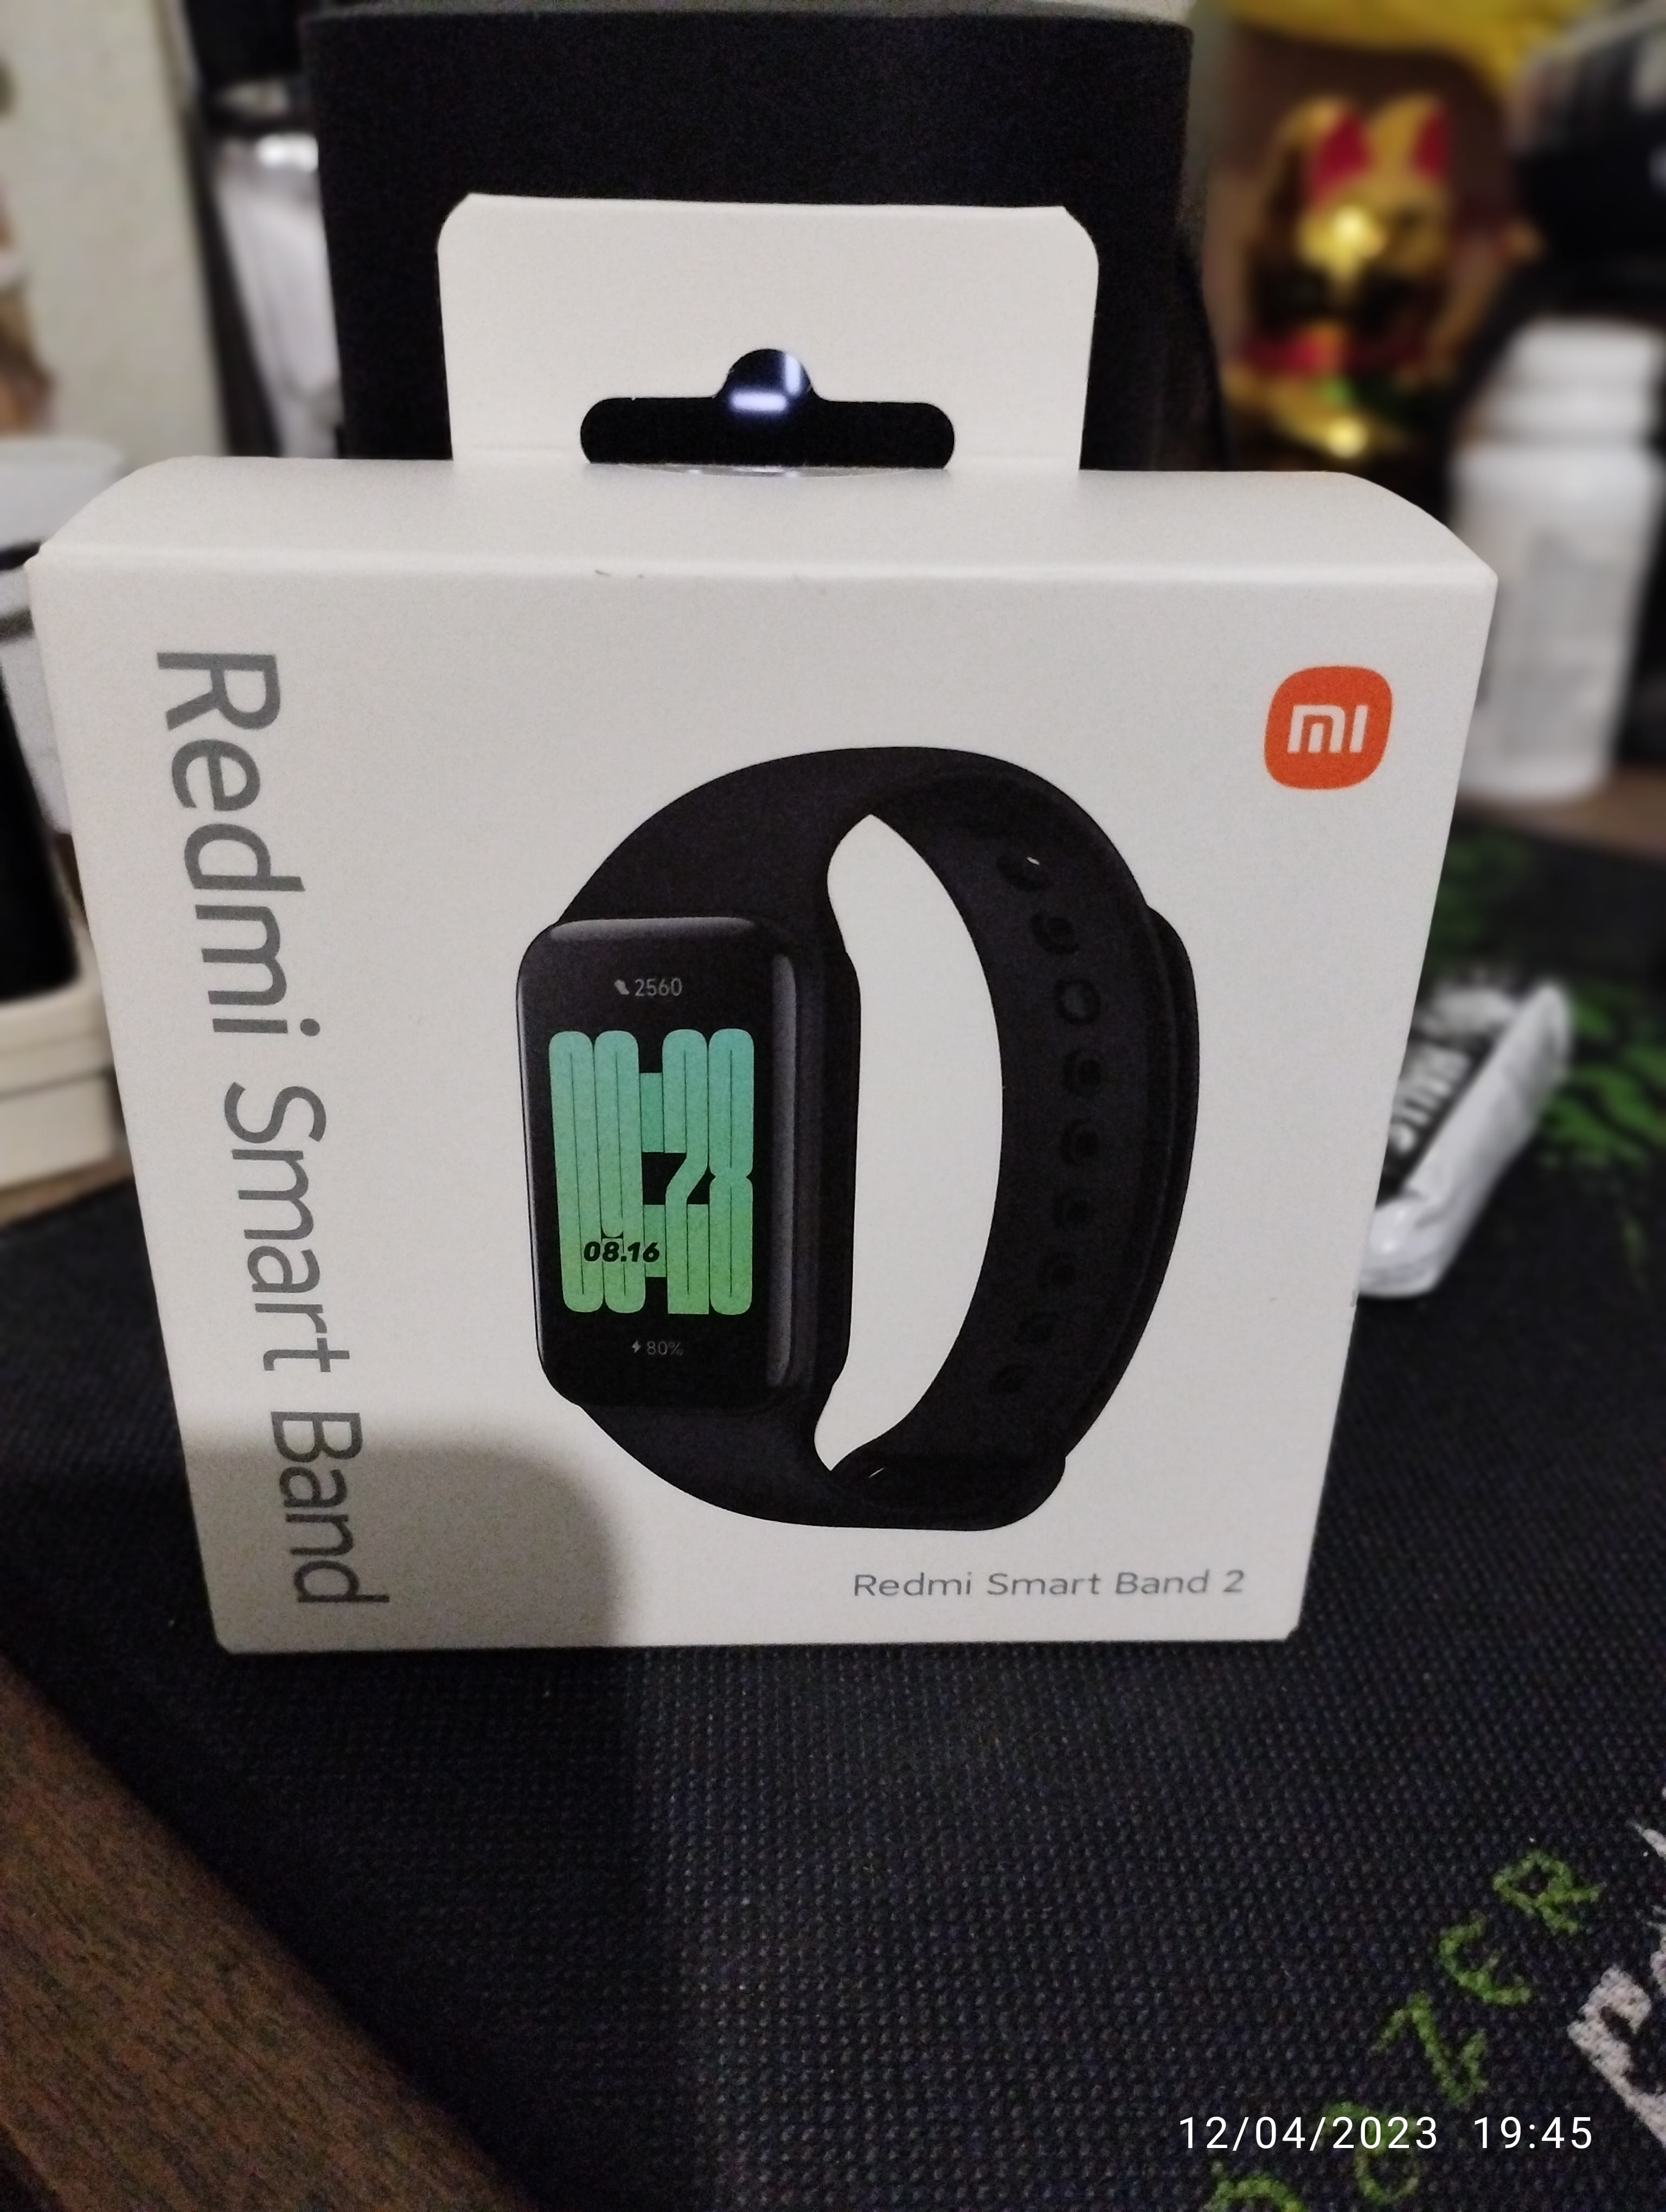 Pulsera inteligente Xiaomi Mi Smart Band 6 (Envío Gratis)_Xiaomi Store